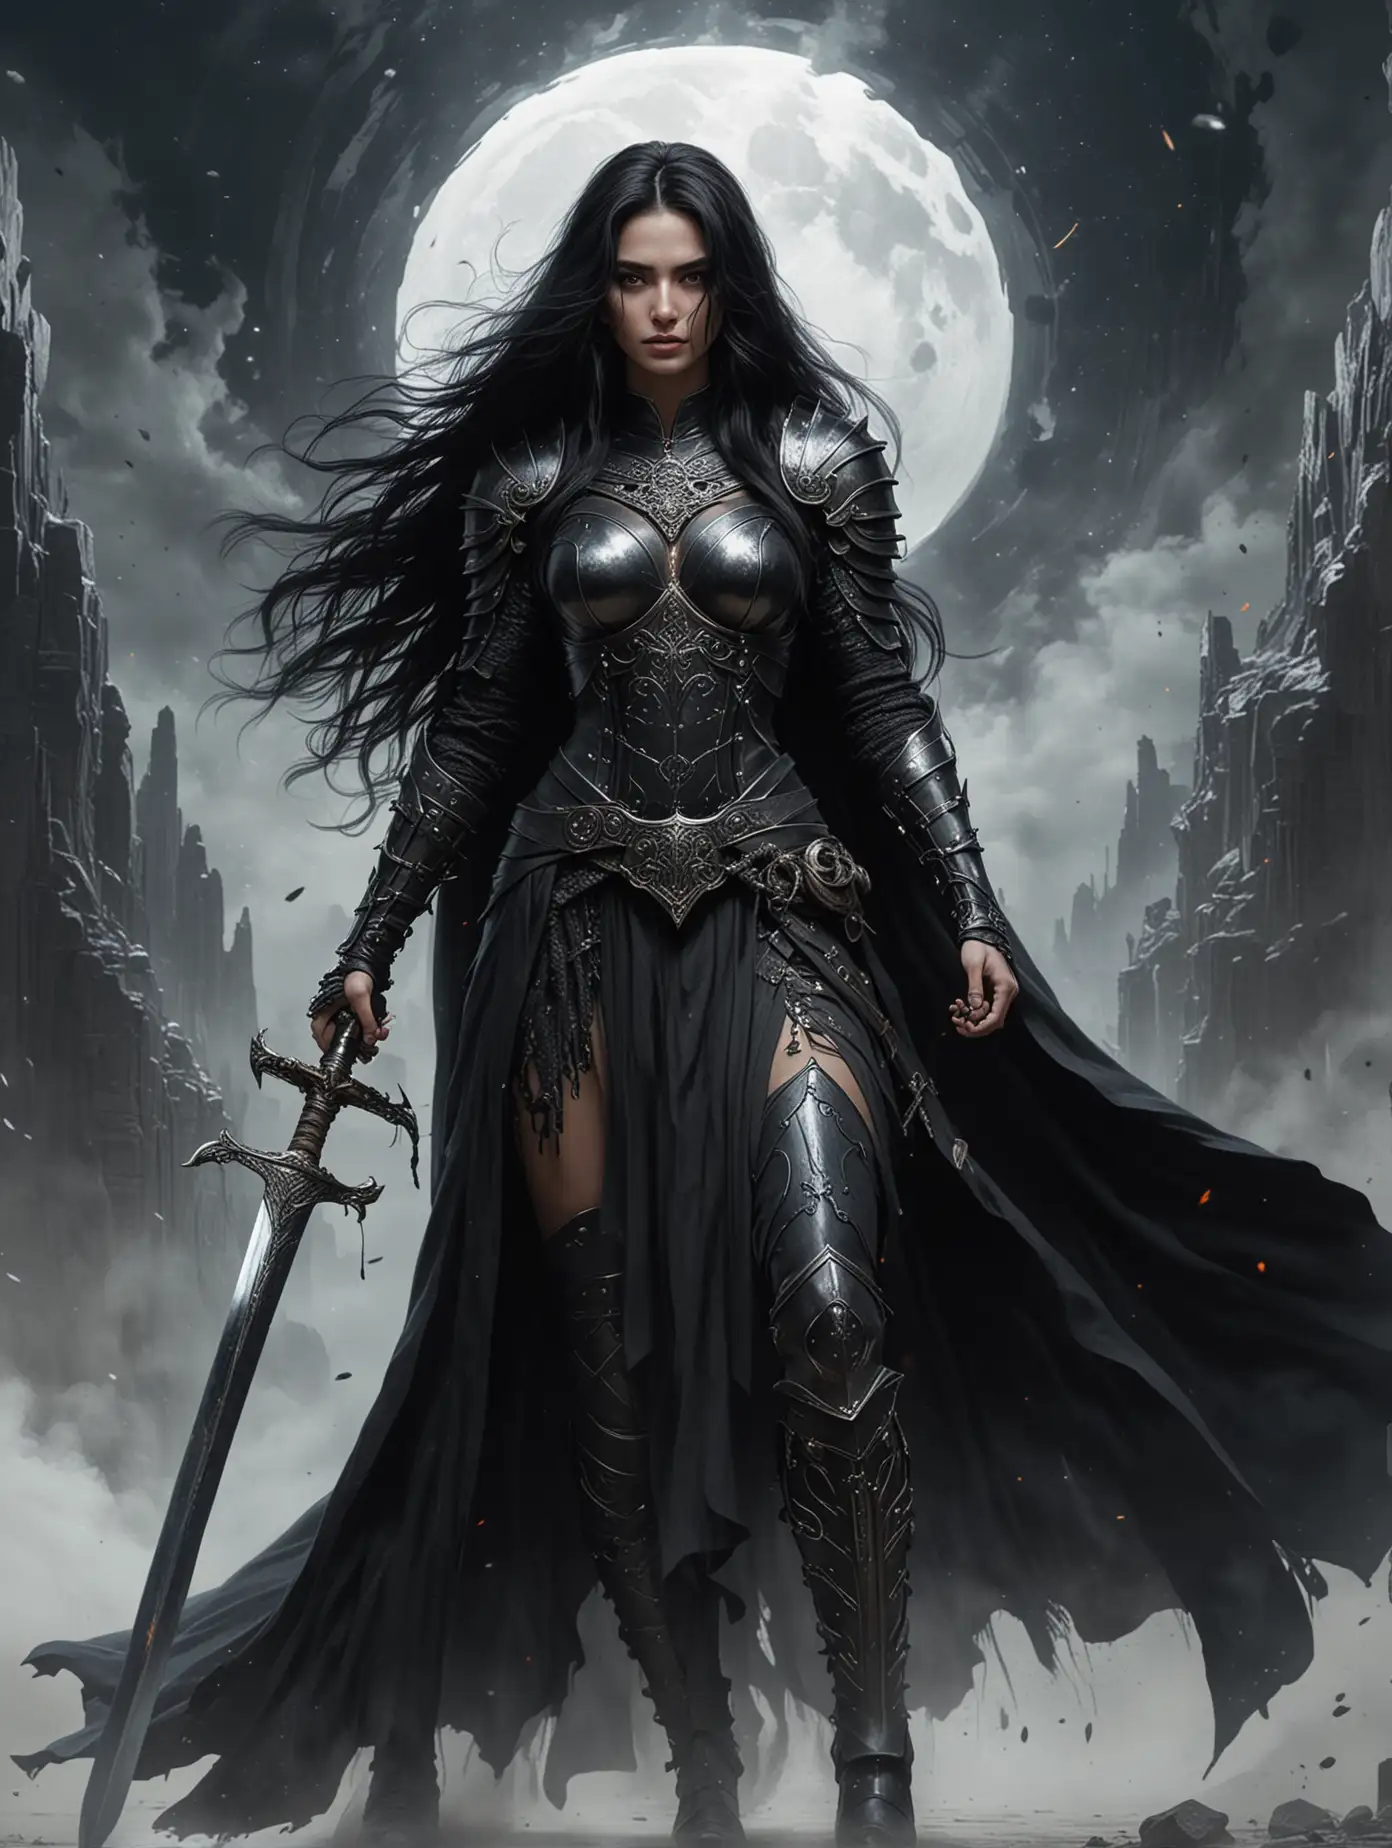 На фоне черной дыры стоит в полный рост красивая женщина воин, она жрица, на глазах  женщины железная маска, в руке у нее большой меч. У женщины длинные черные волосы. На женщине одежда с доспехами черного цвета, которая развивается на ветру.